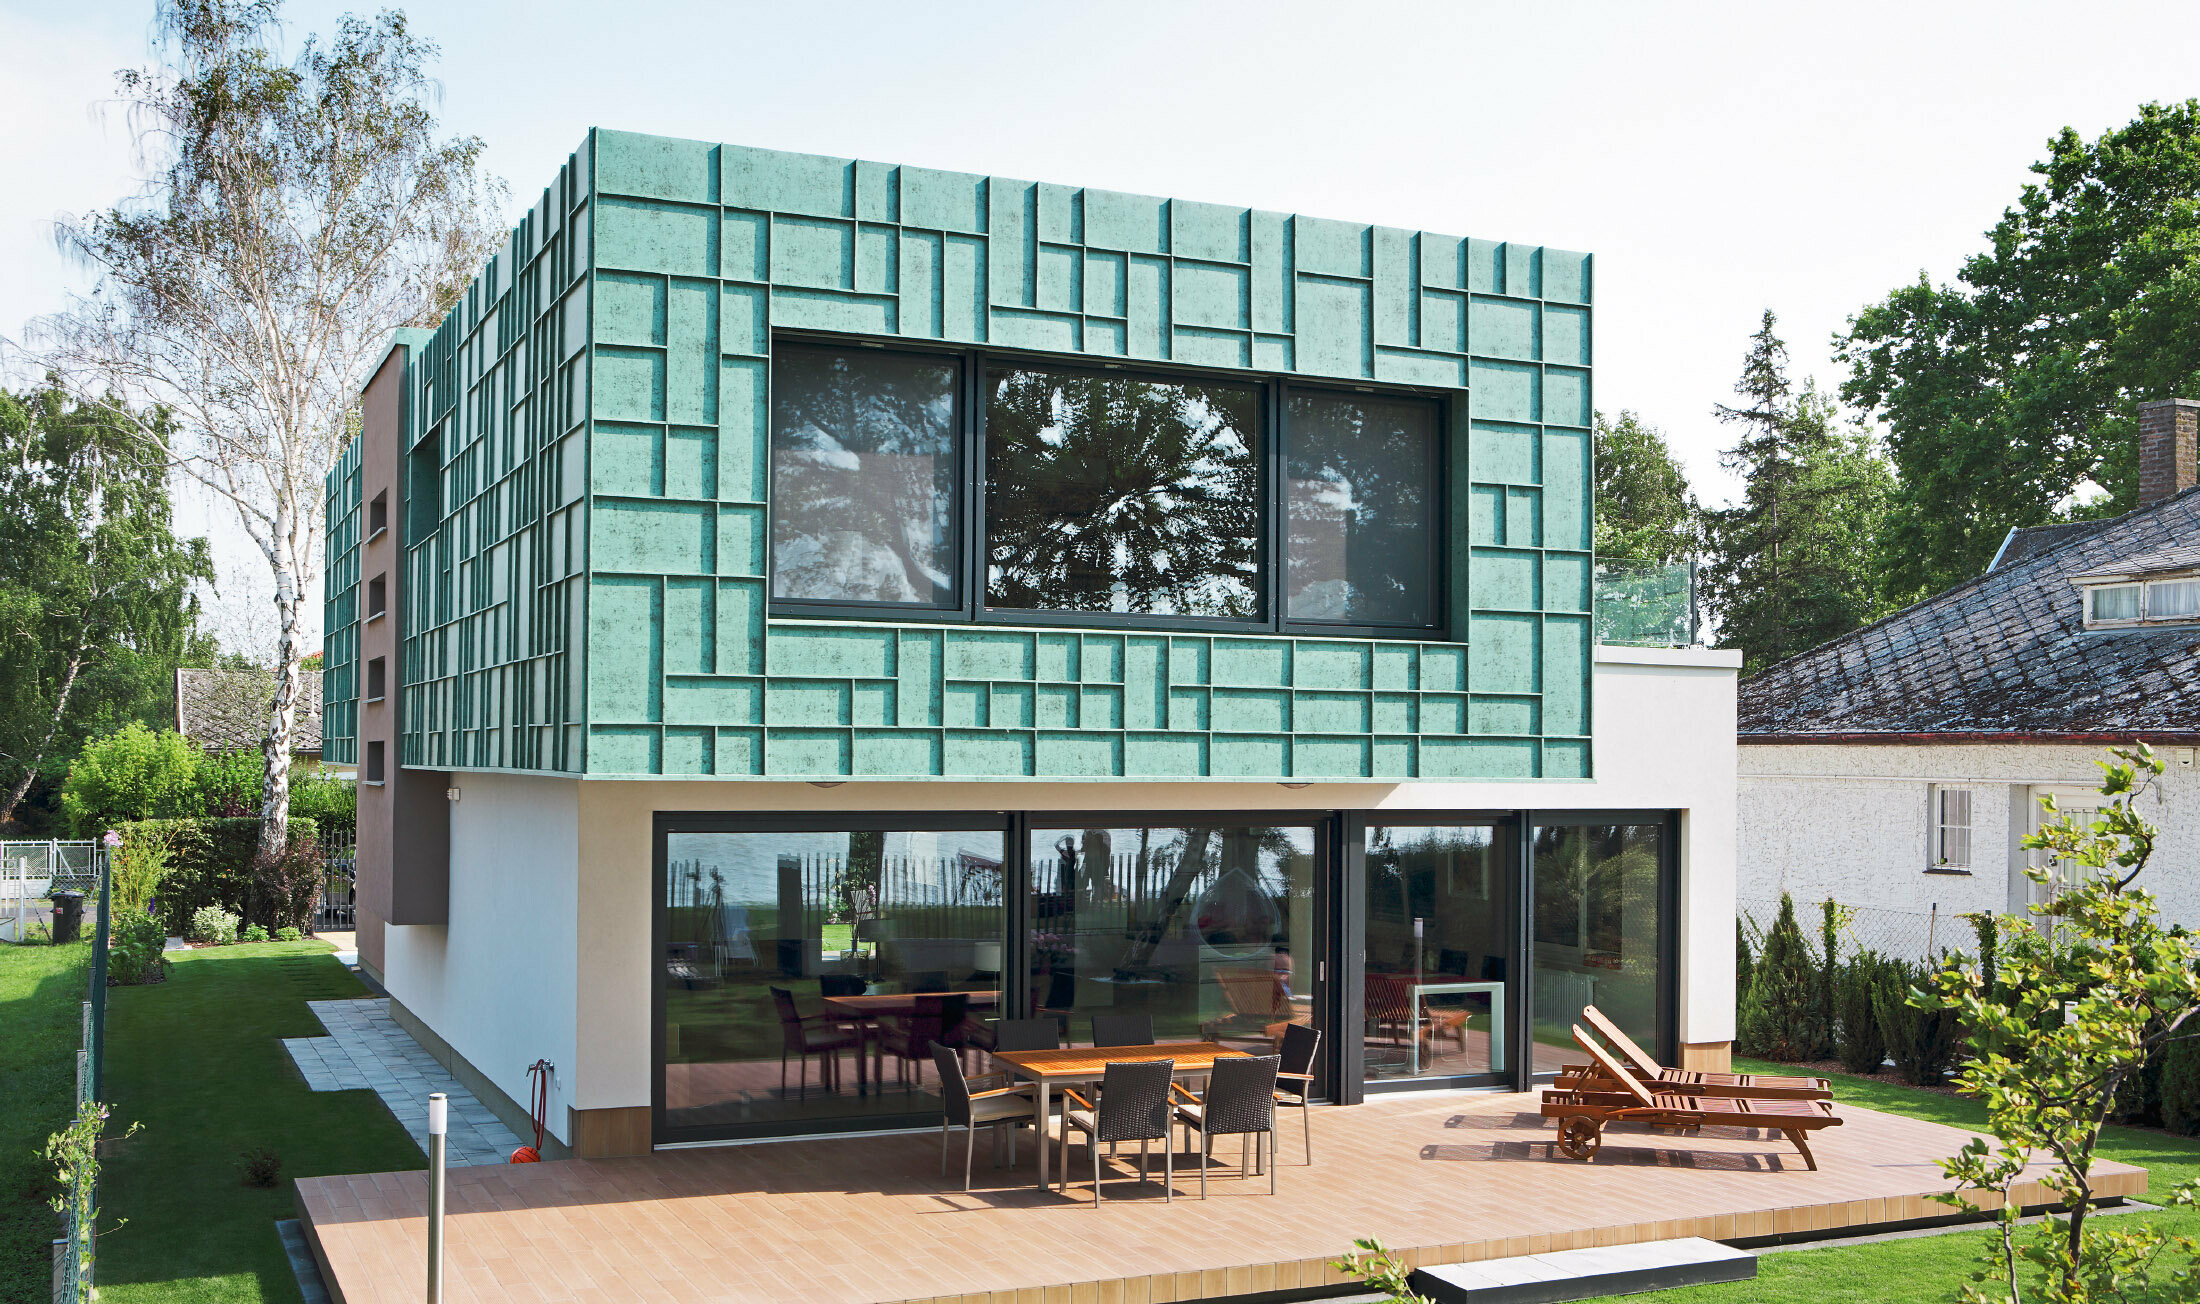 Moderný rodinný dom s fasádou odolnou voči víchrici, ktorá bola obložená systémom PREFALZ vo farebnom odtieni P.10 patina zelená.